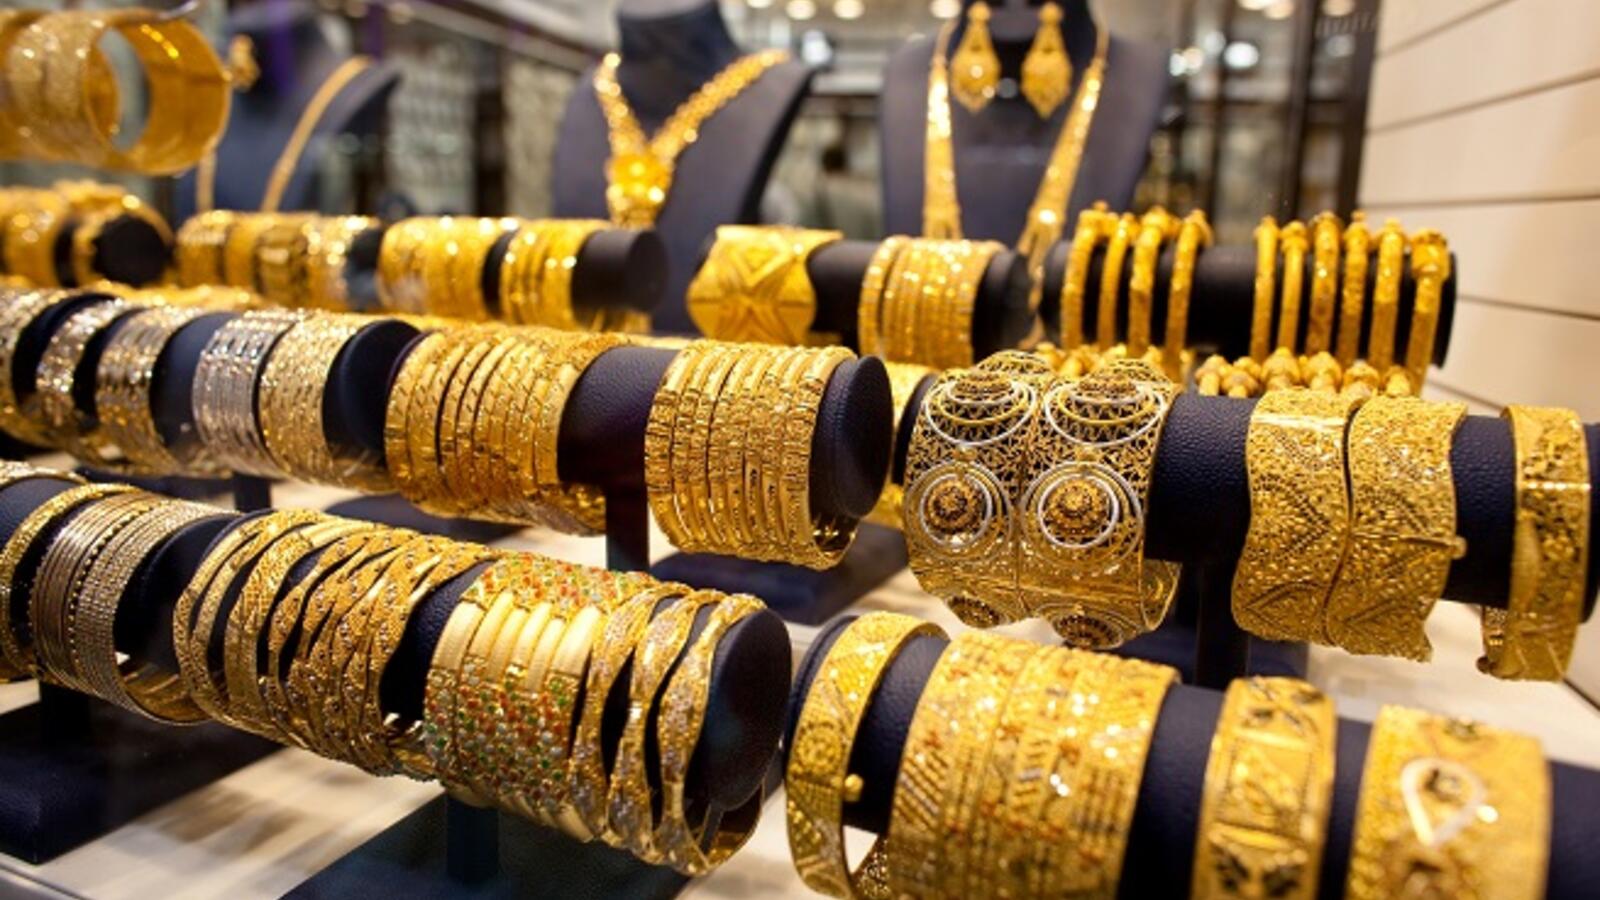 أسعار الذهب في مصر اليوم 8-6-2020 وعيار 21 يسجل أعلى سعر في تاريخه - جريدة المال